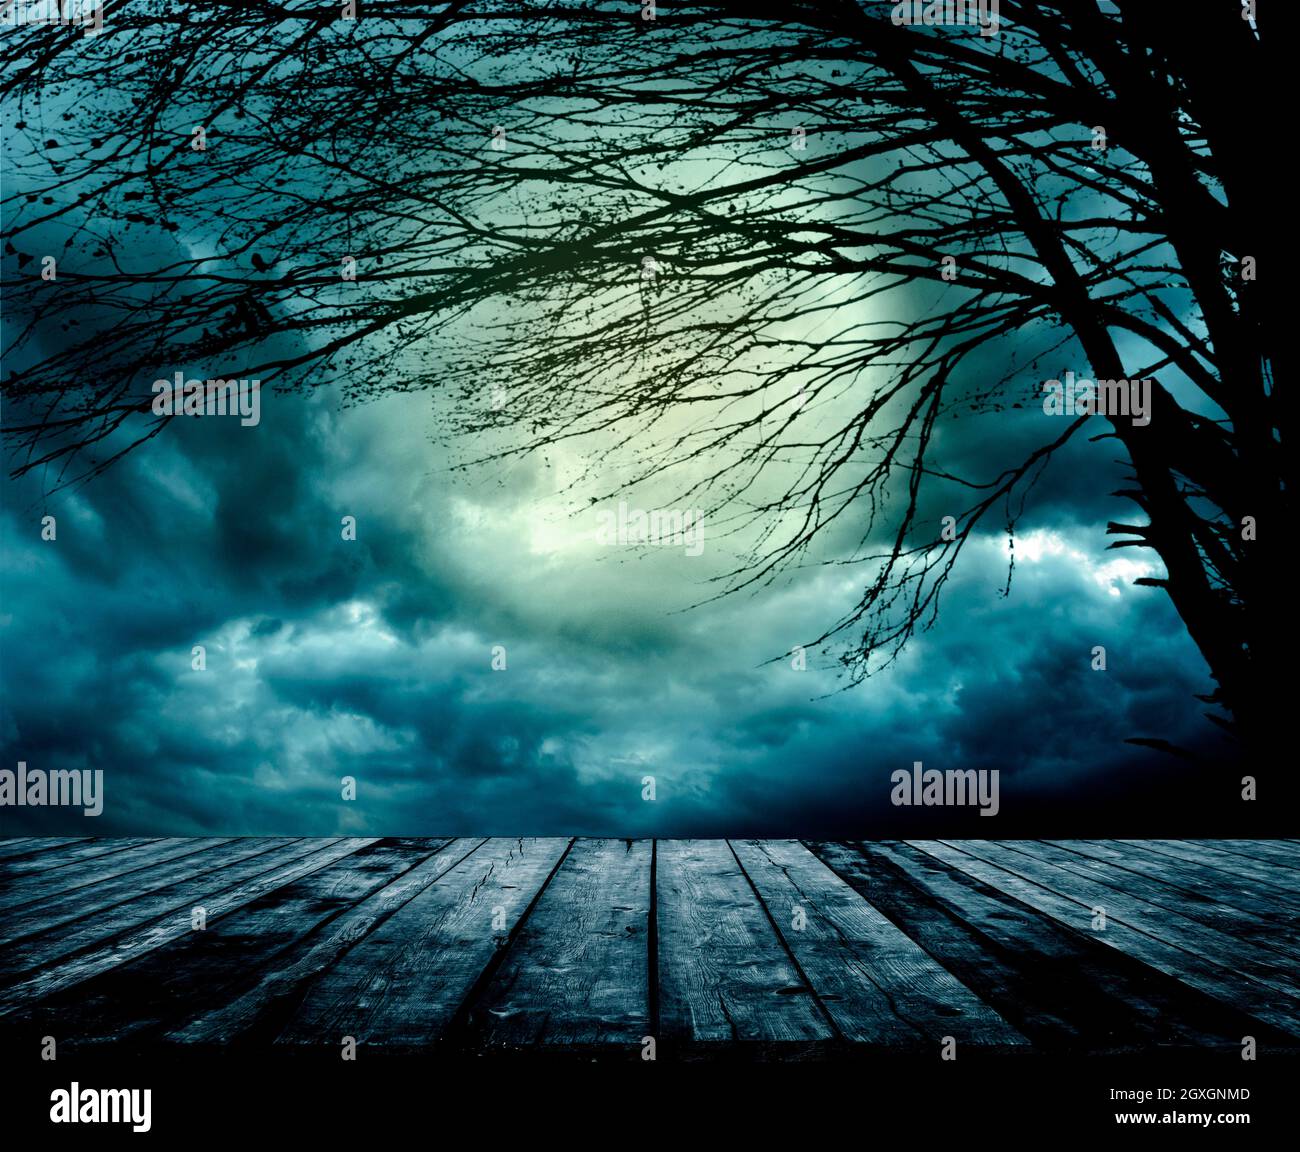 Vieille table en bois de grunge devant une scène de nuit effrayante. Fond de composition Halloween avec forêt sombre effrayante et lune maléfique. Paysage d'horreur mystère Banque D'Images